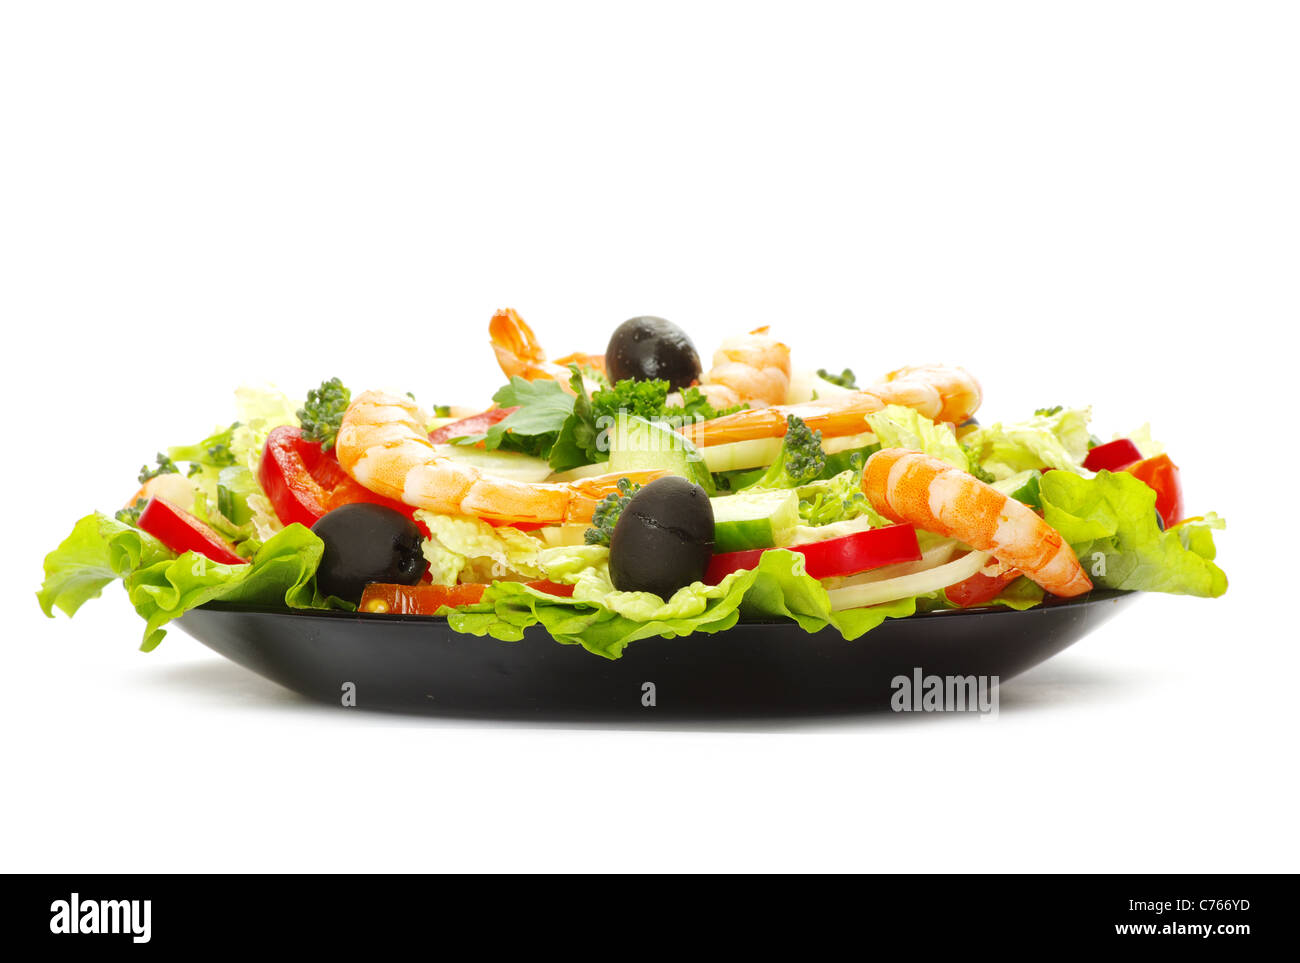 Appetizing salad on white background Stock Photo